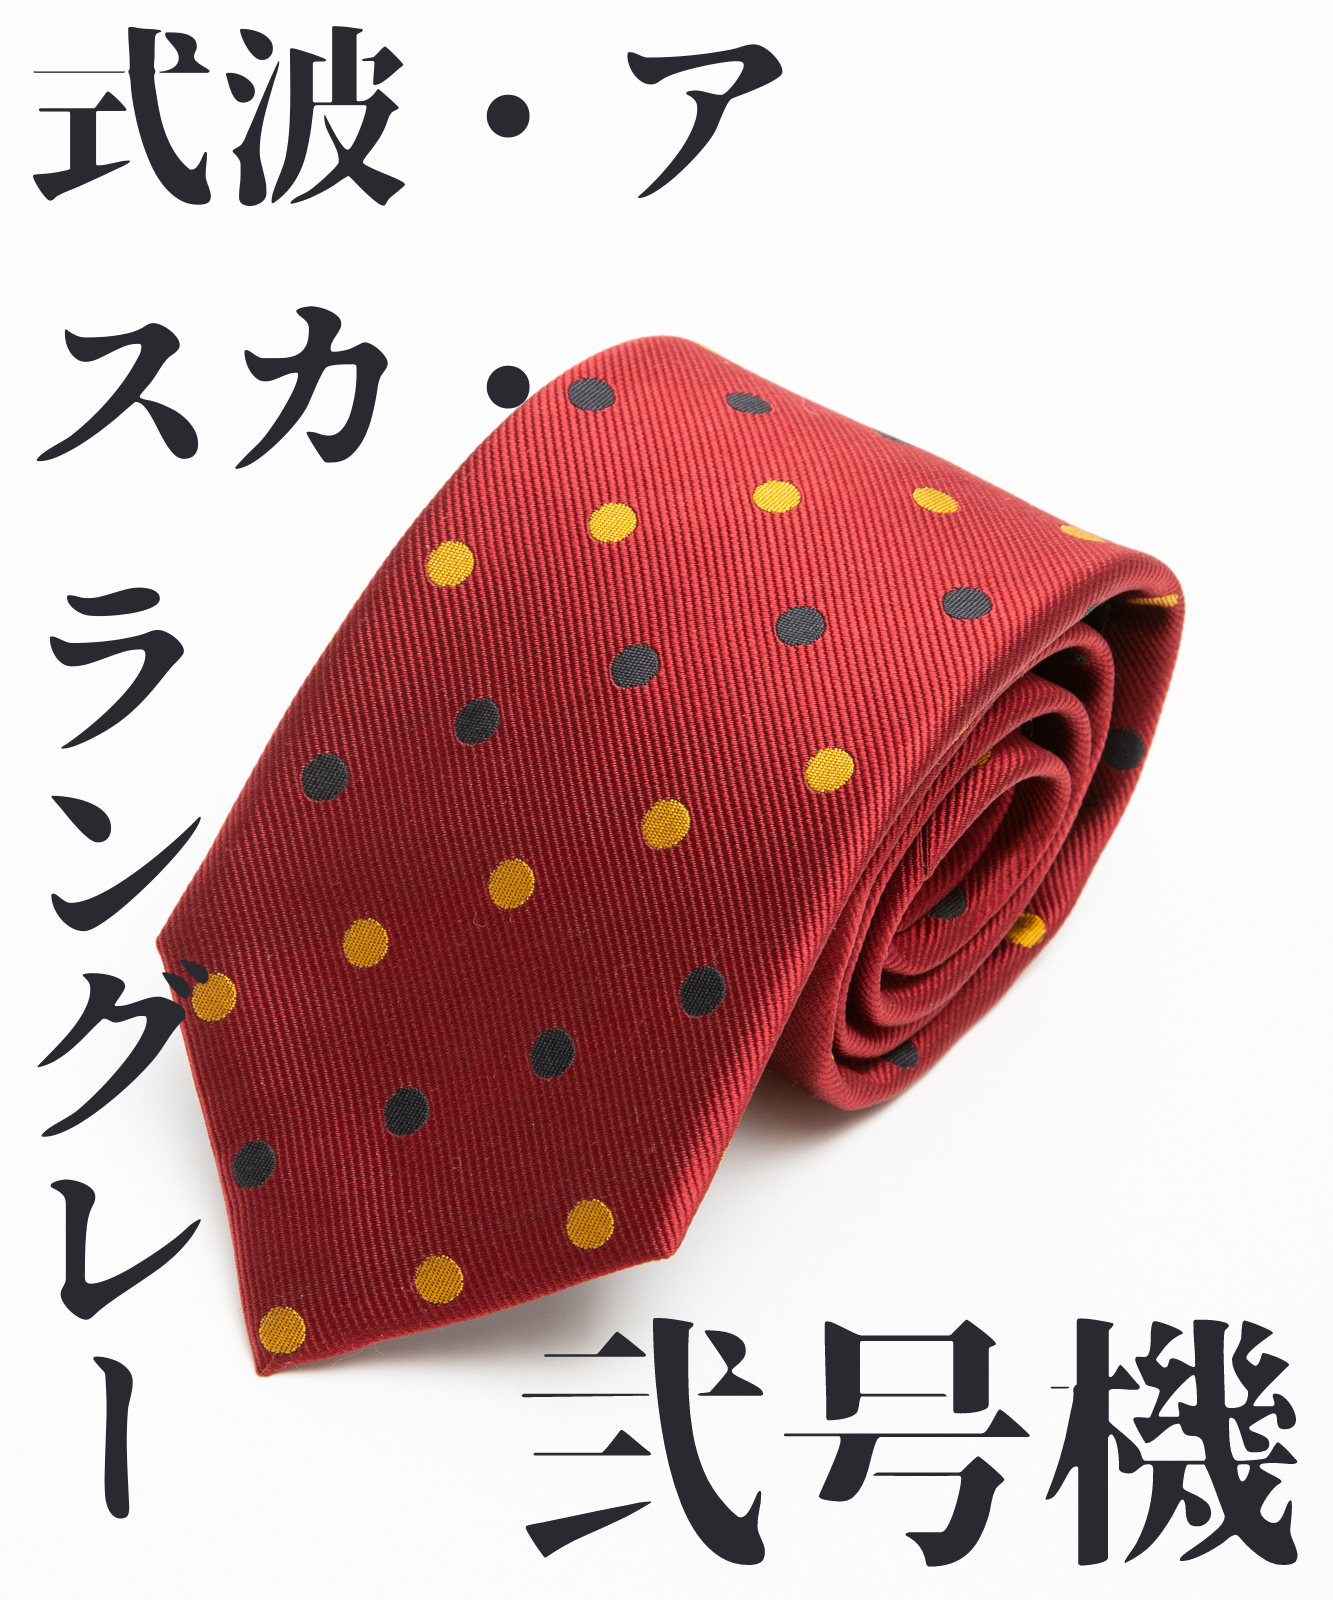 エヴァのコラボtシャツやネクタイが販売中 アキバ総研